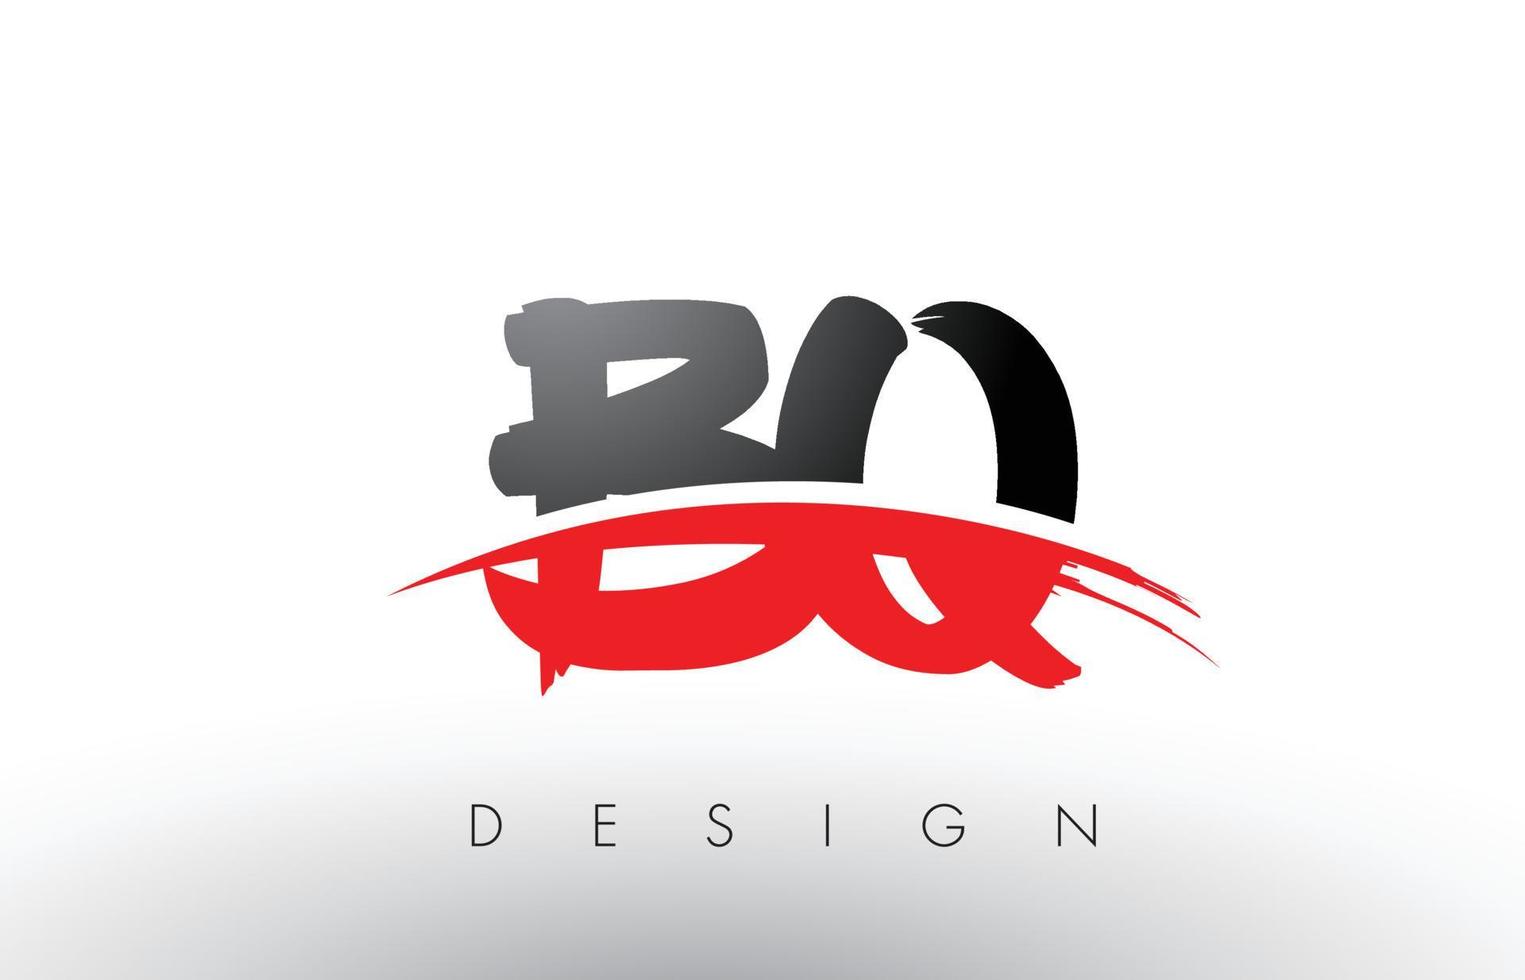 letras del logotipo del cepillo bq bq con frente de cepillo swoosh rojo y negro vector